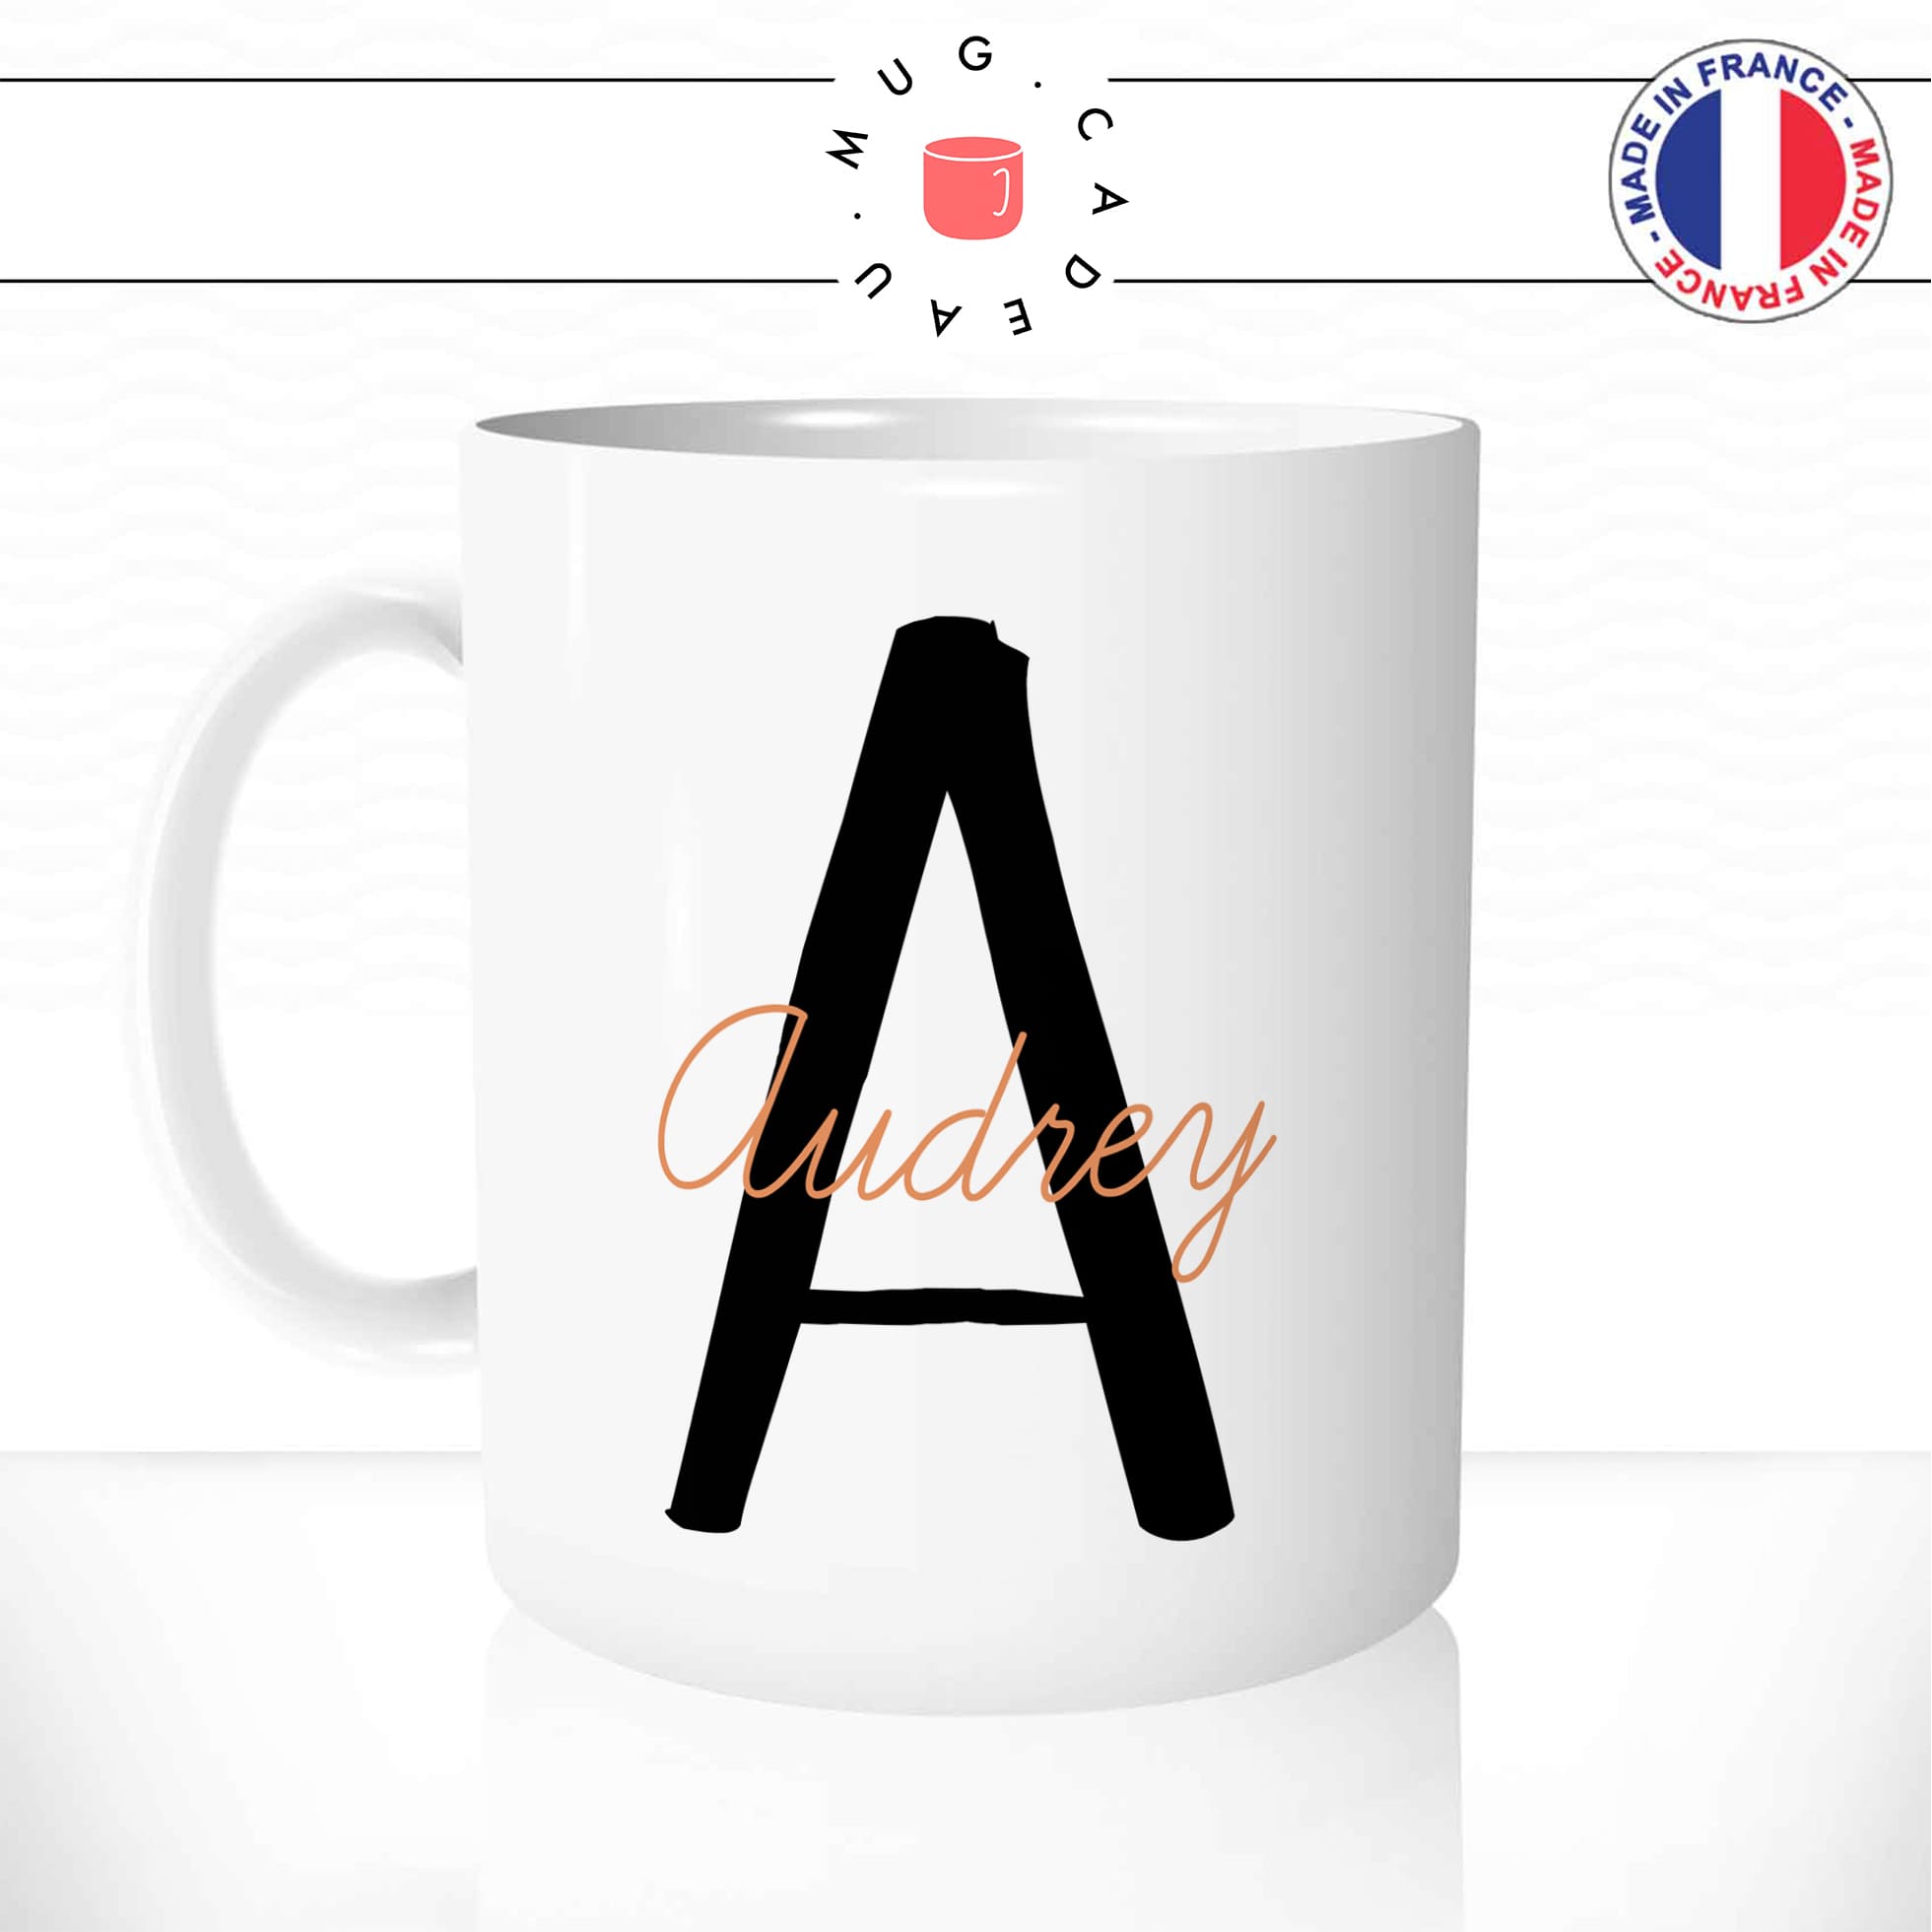 mug-tasse-blanche-lettre-noire-orange-prenom-personnalisable-decoration-boho-chic-mode-original-fun-collegue-idée-cadeau-cool-offrir-café